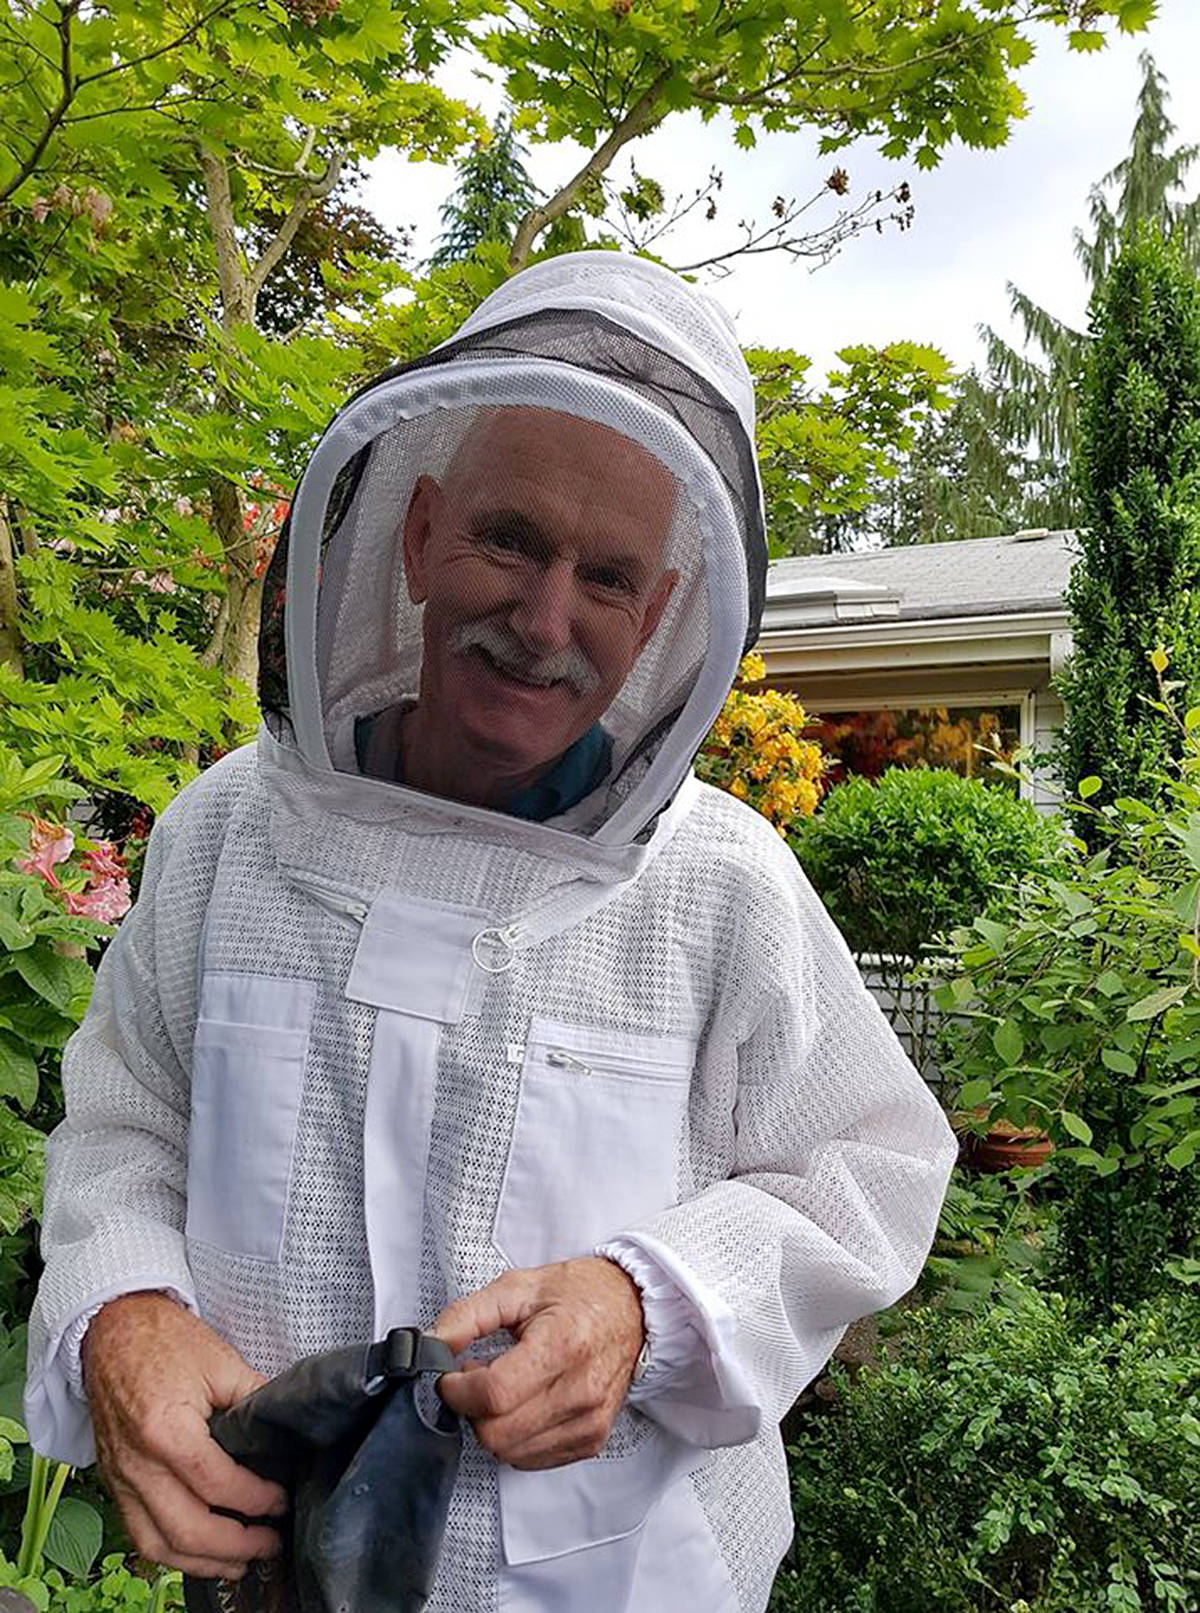 12266136_web1_Tom-the-beekeeperC